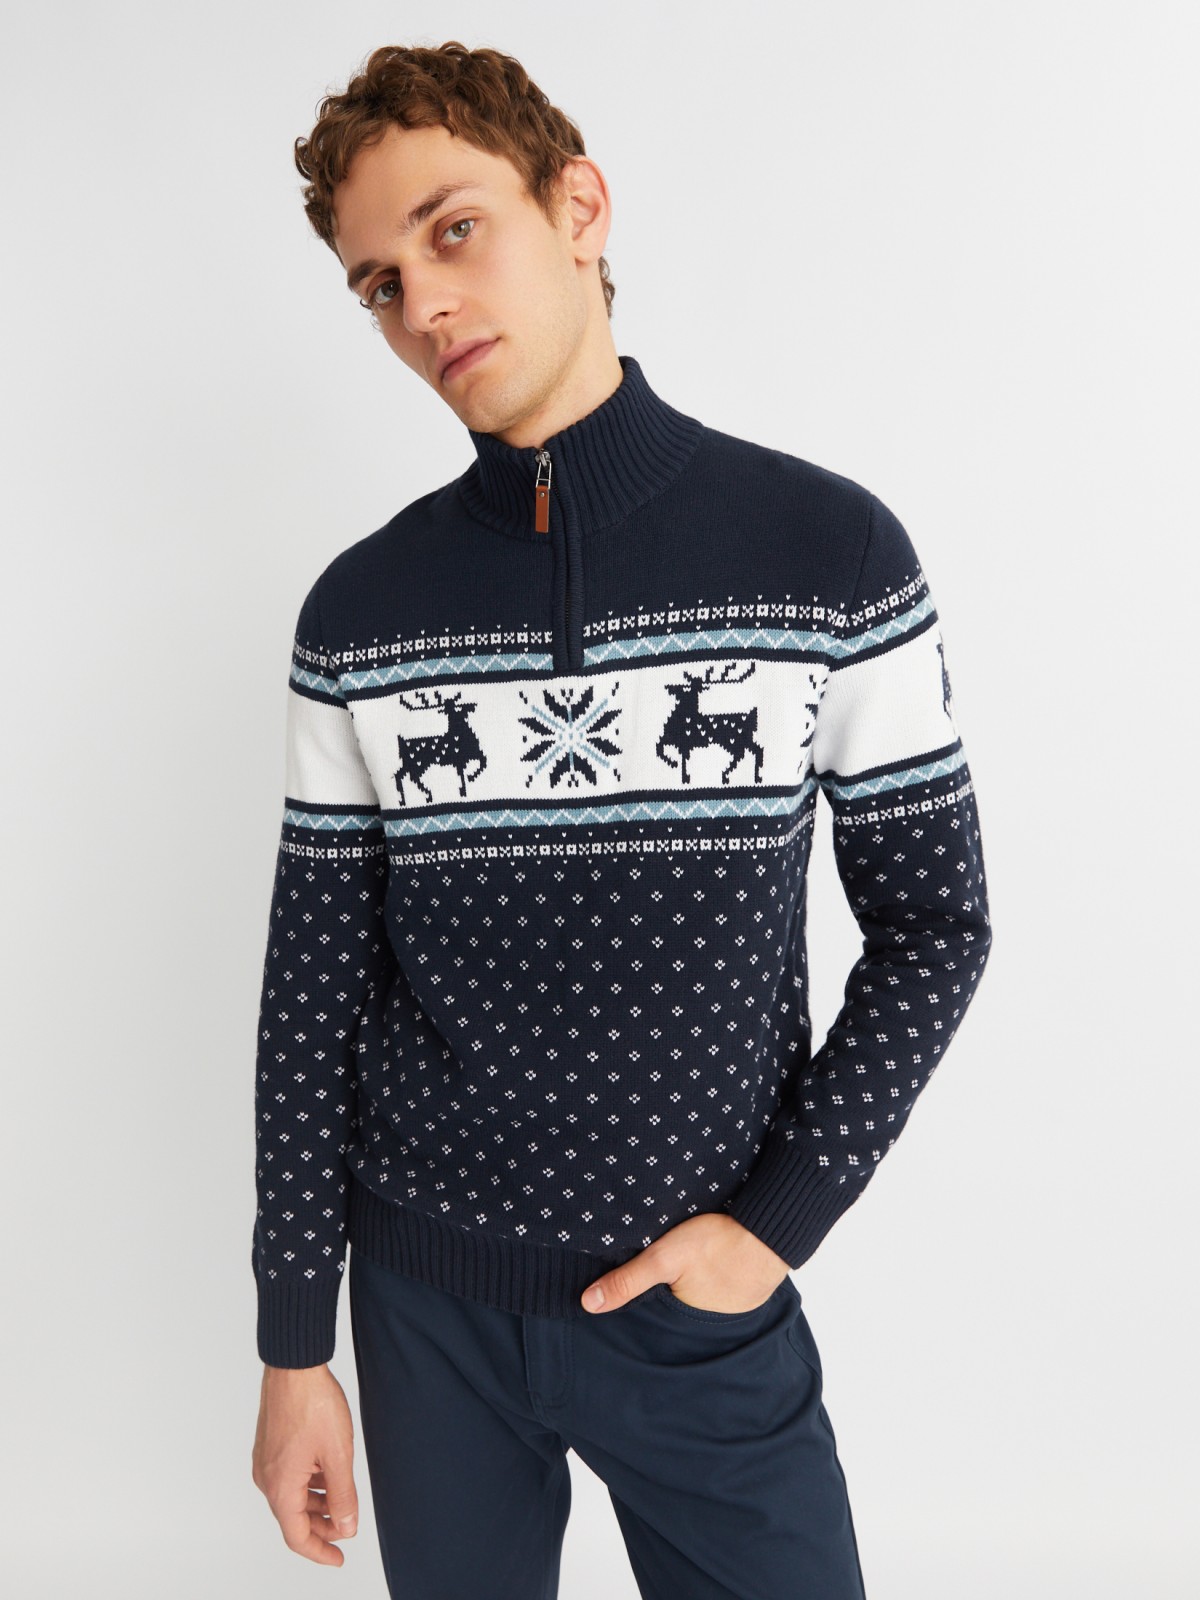 Вязаный свитер с воротником на молнии и скандинавским узором zolla 013436823043, цвет синий, размер M - фото 1